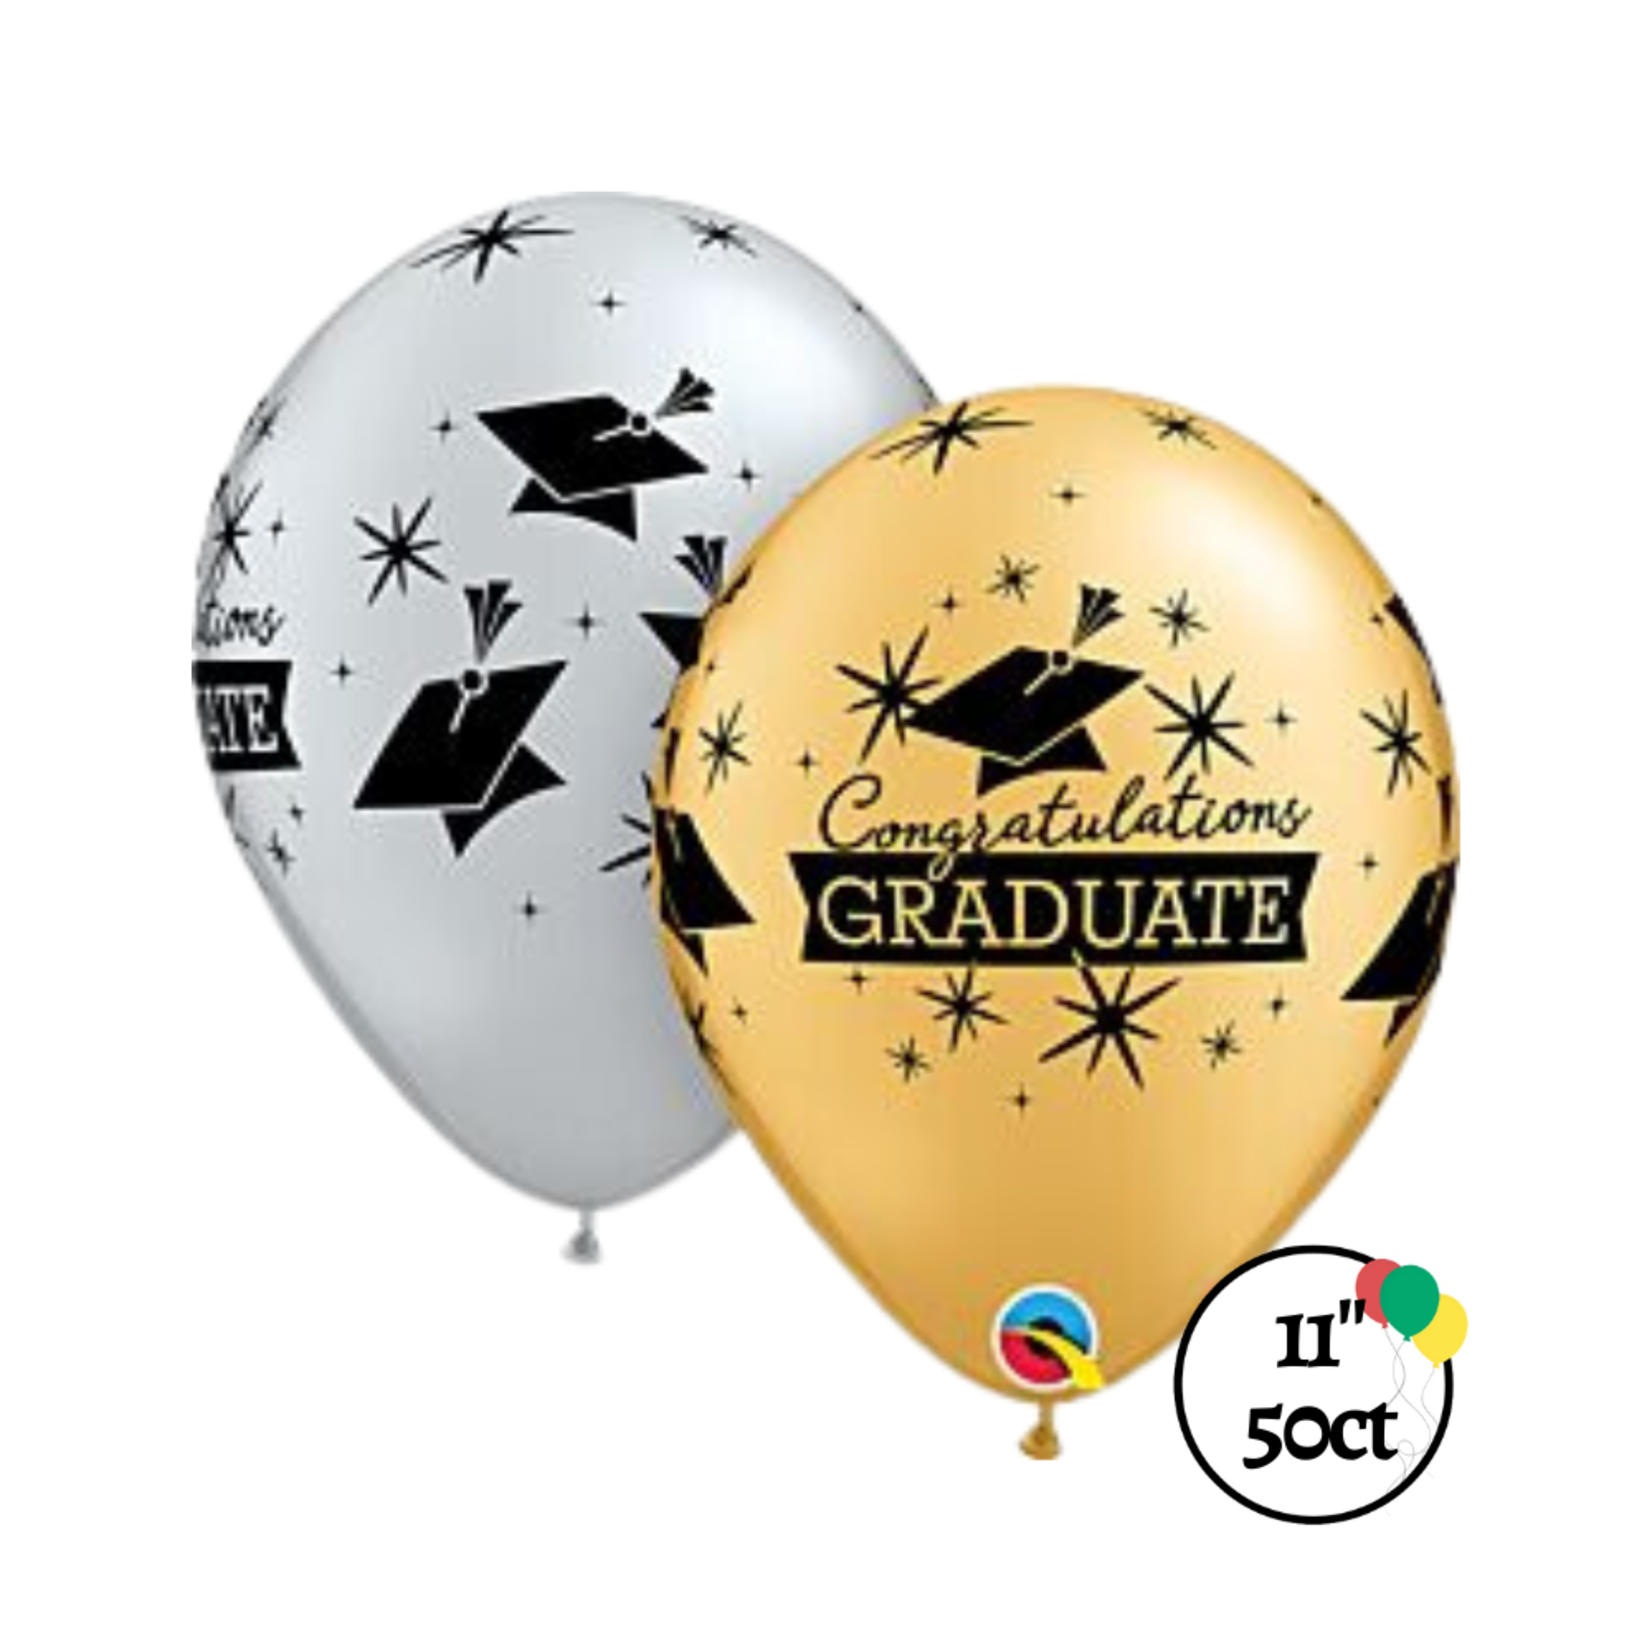 Qualatex Qualatex Congrats Grad Balloons 11" 50ct